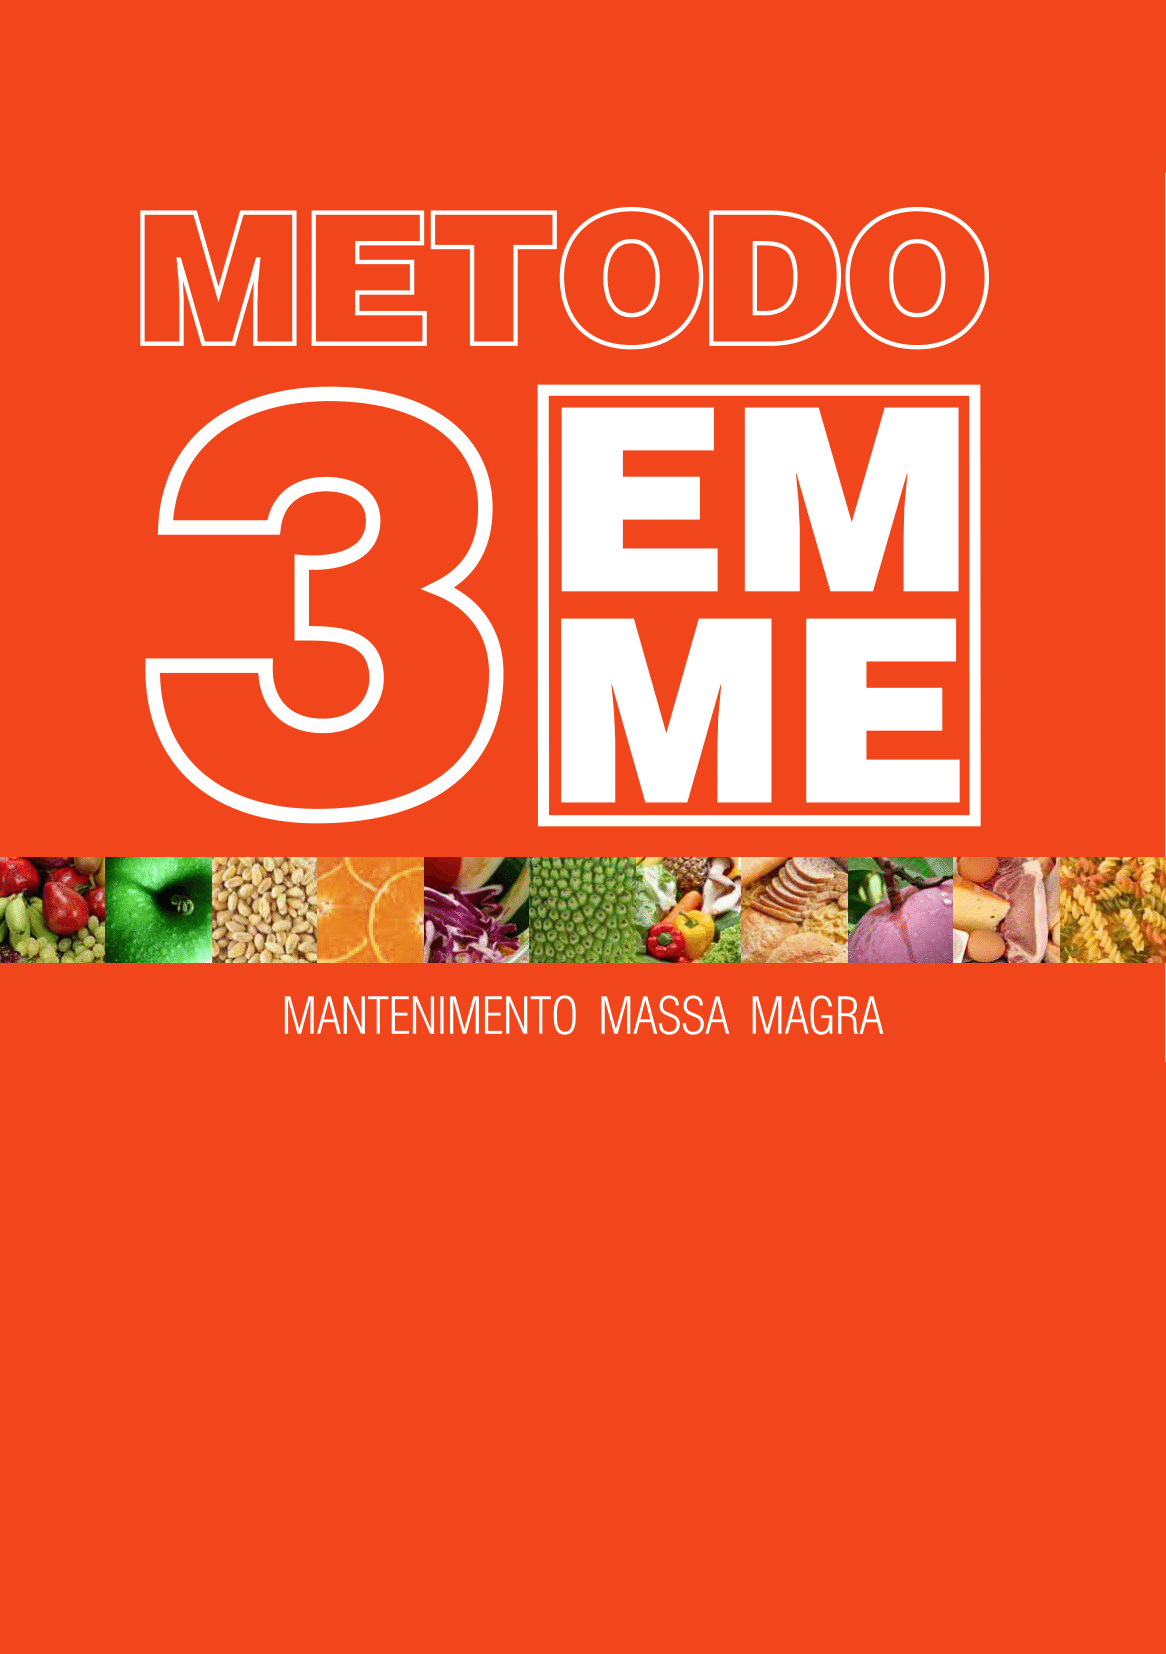 3emme-metodo